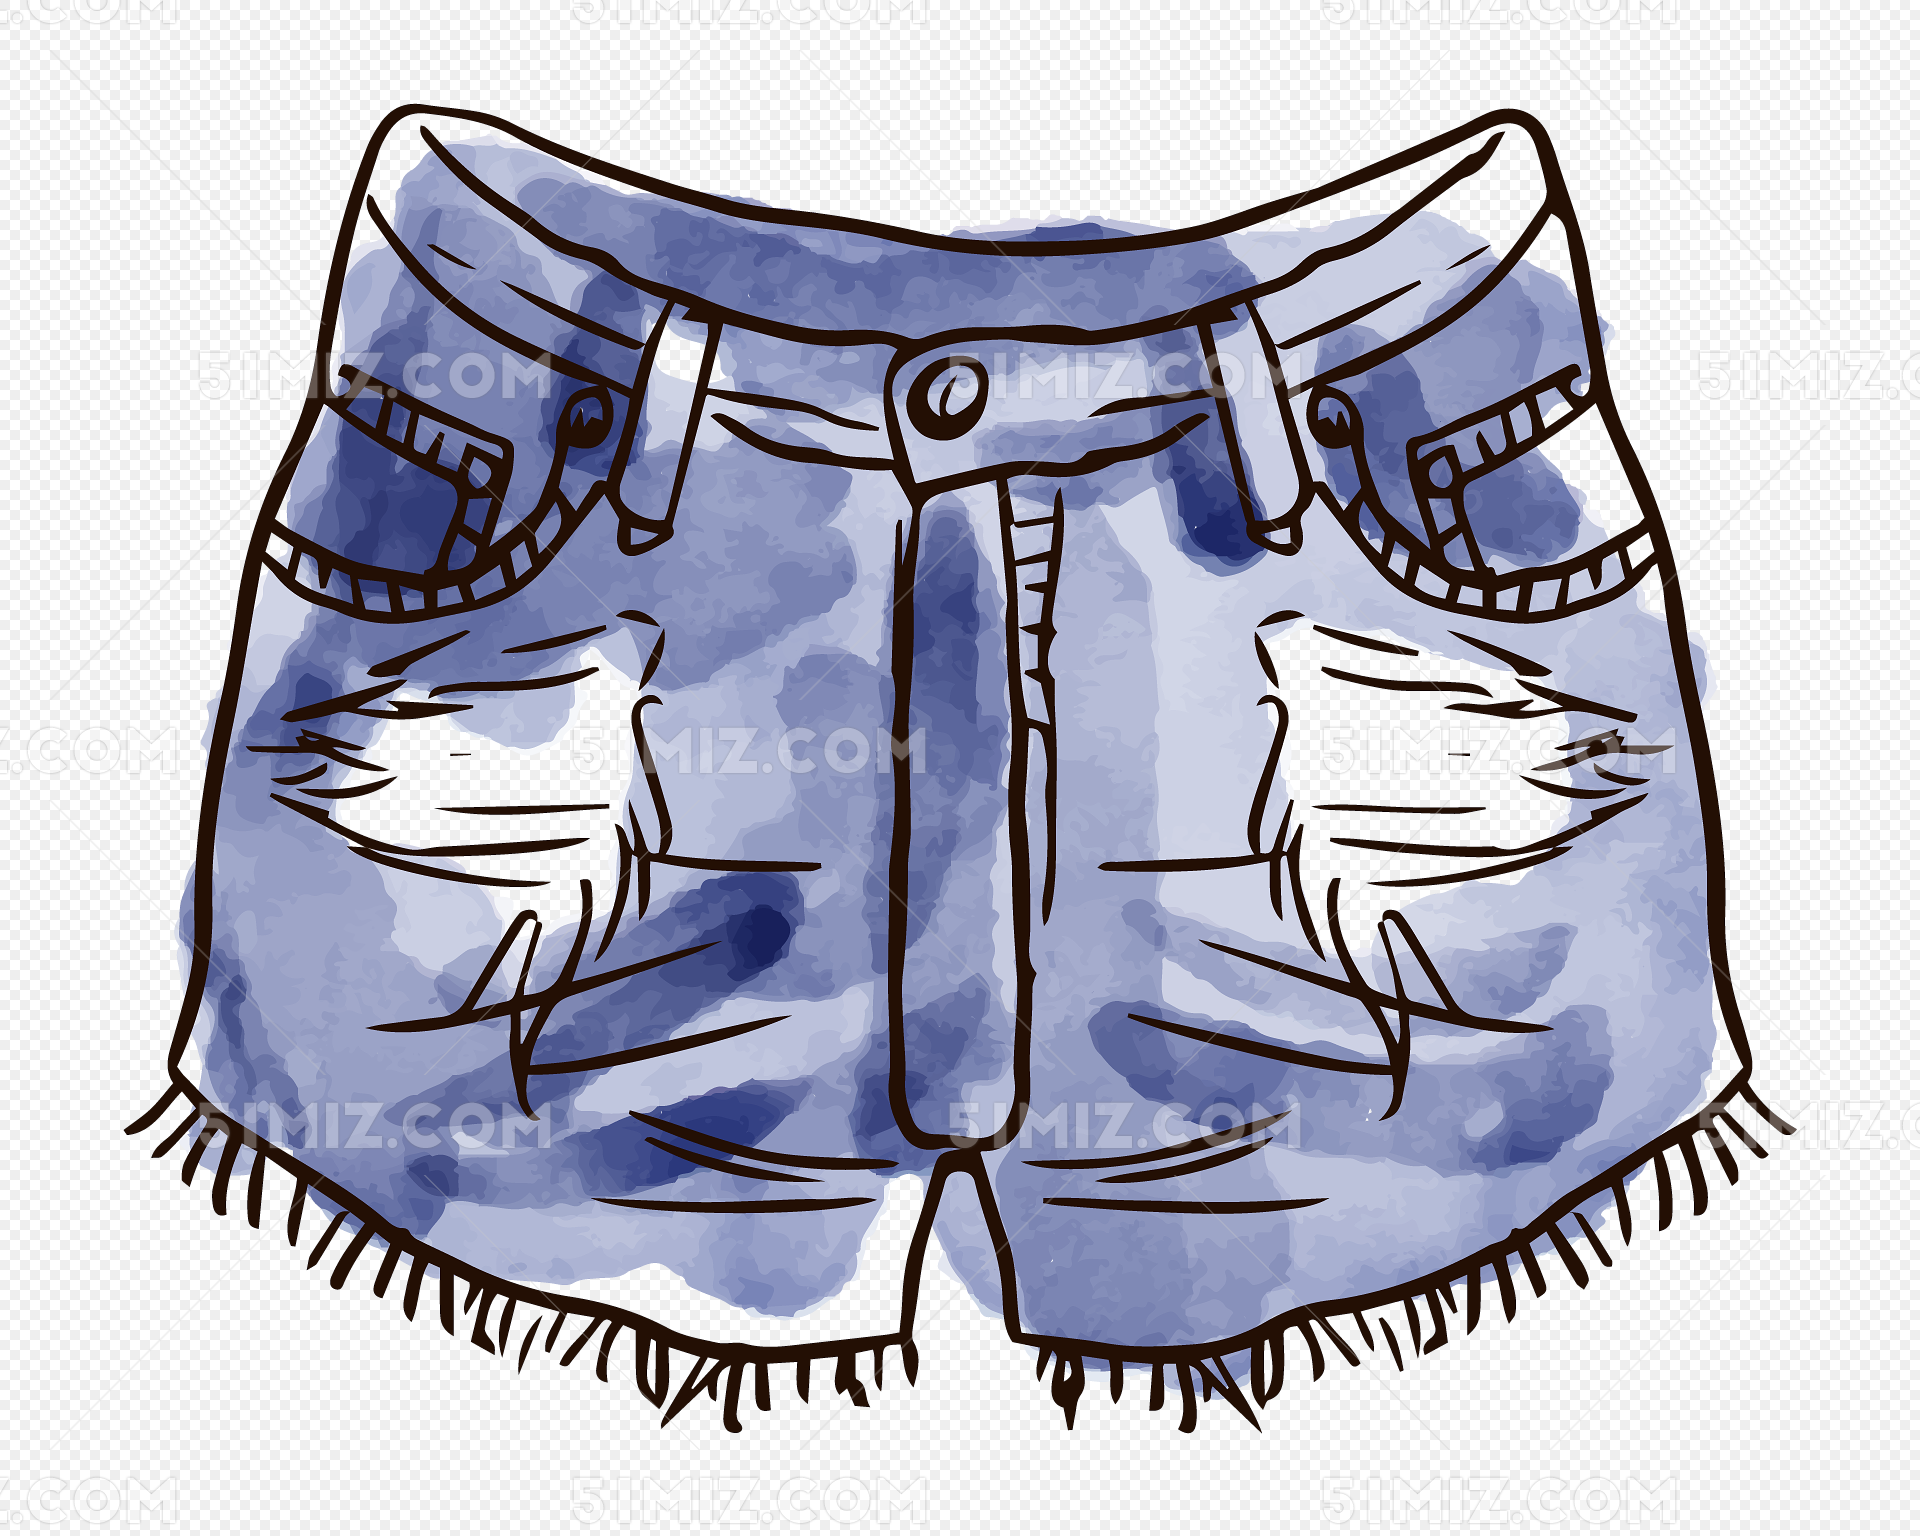 艺森合尚教育 怎样用素描画出牛仔裤质感 - 哔哩哔哩